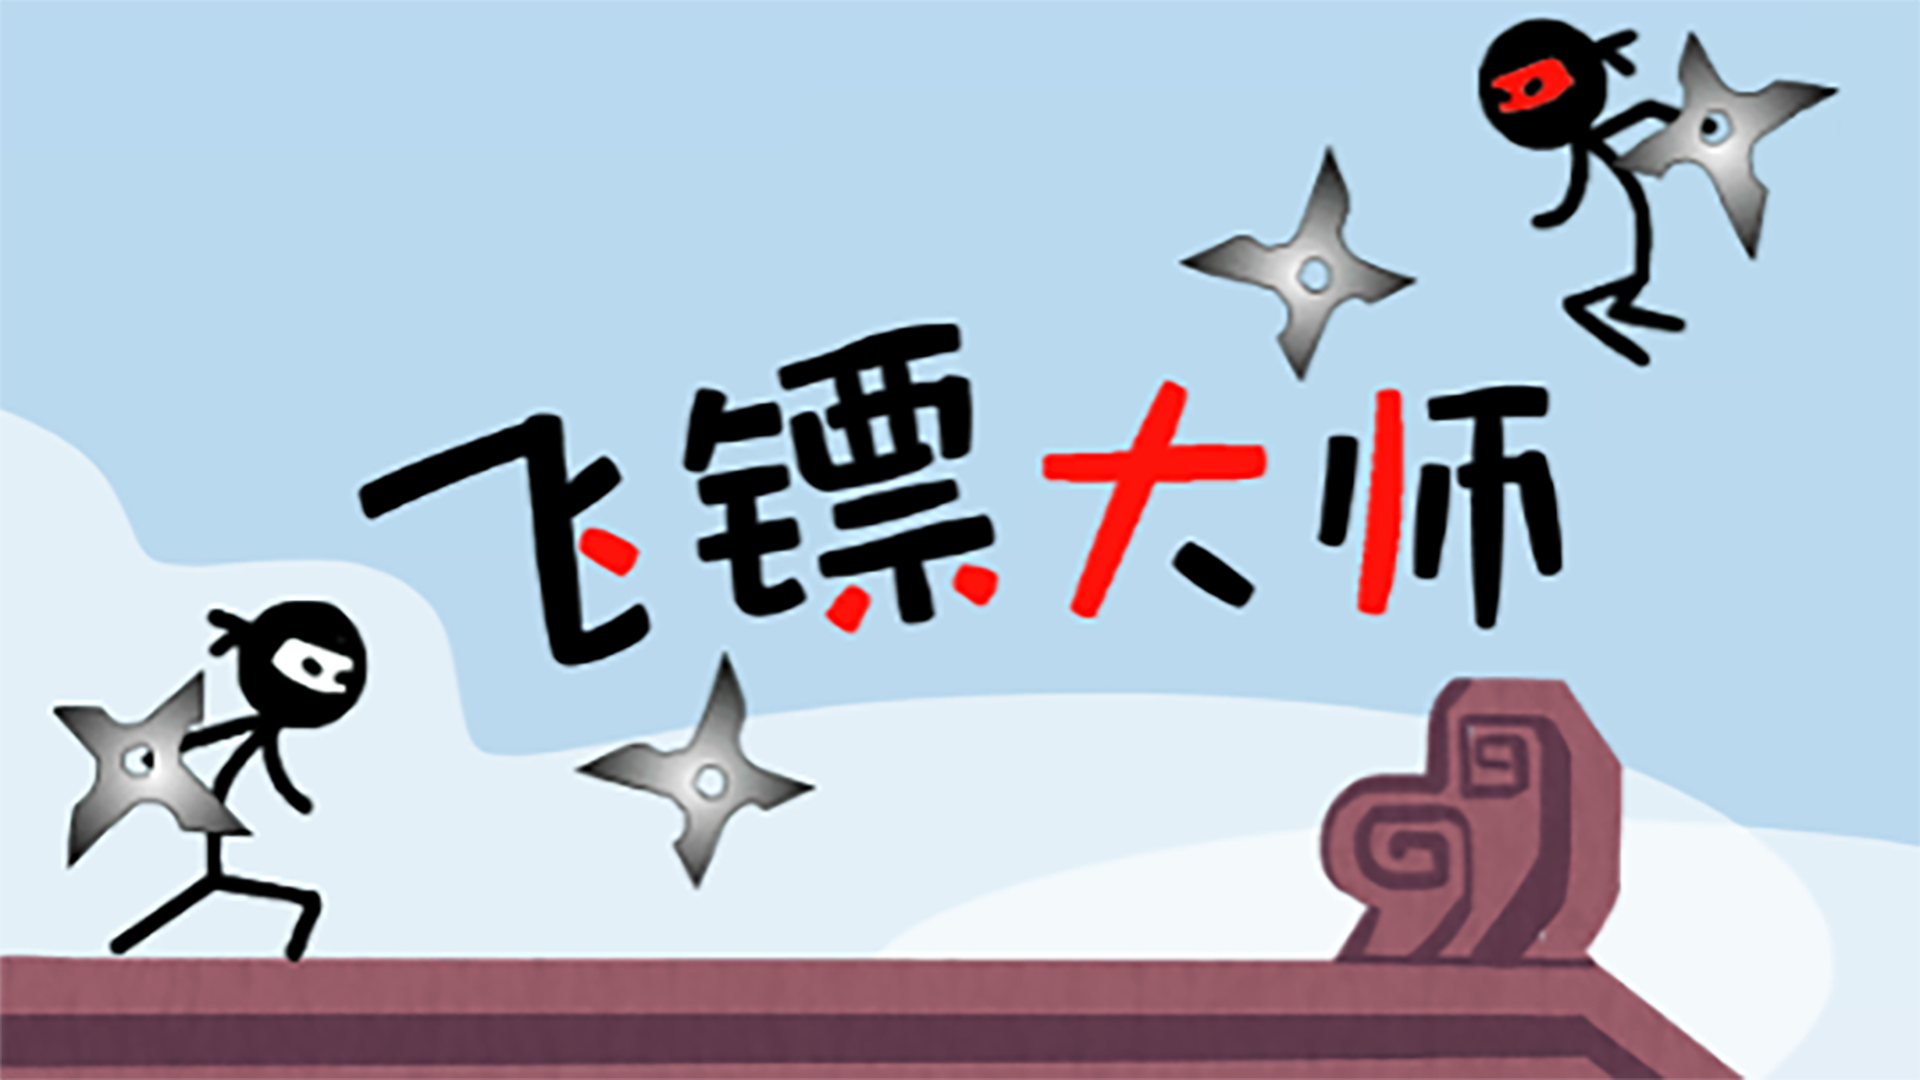 Banner of ダーツマスター 